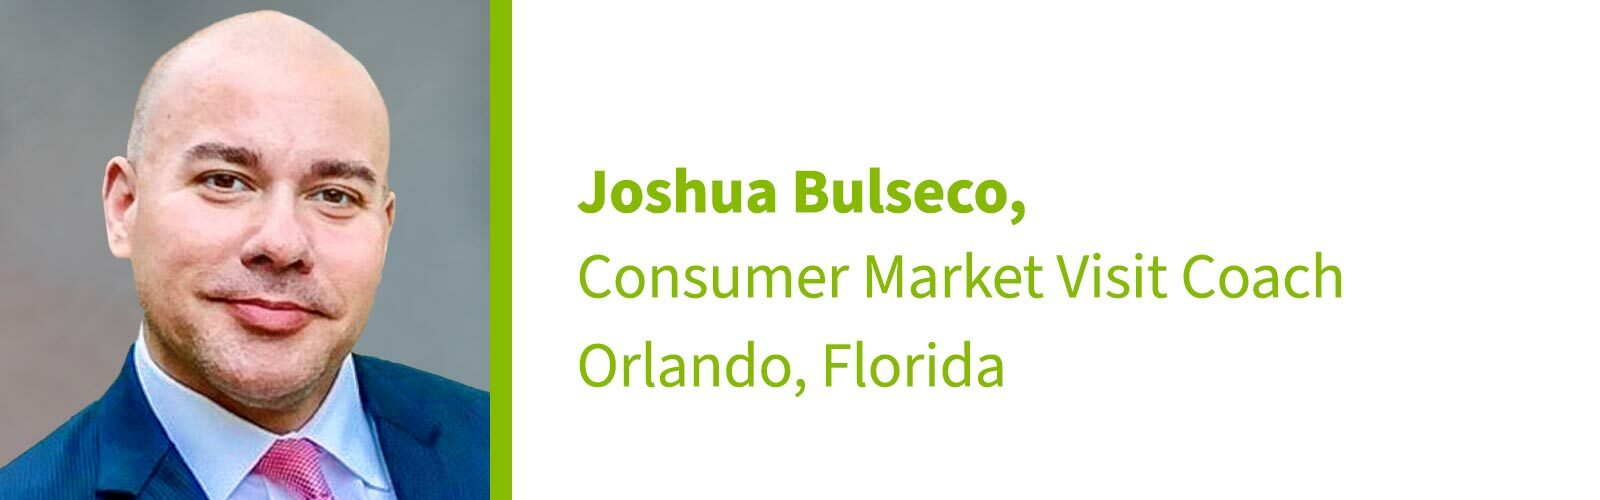 Joshua Bulseco, Consumer Market Visit Coach, Orlando, Florida 